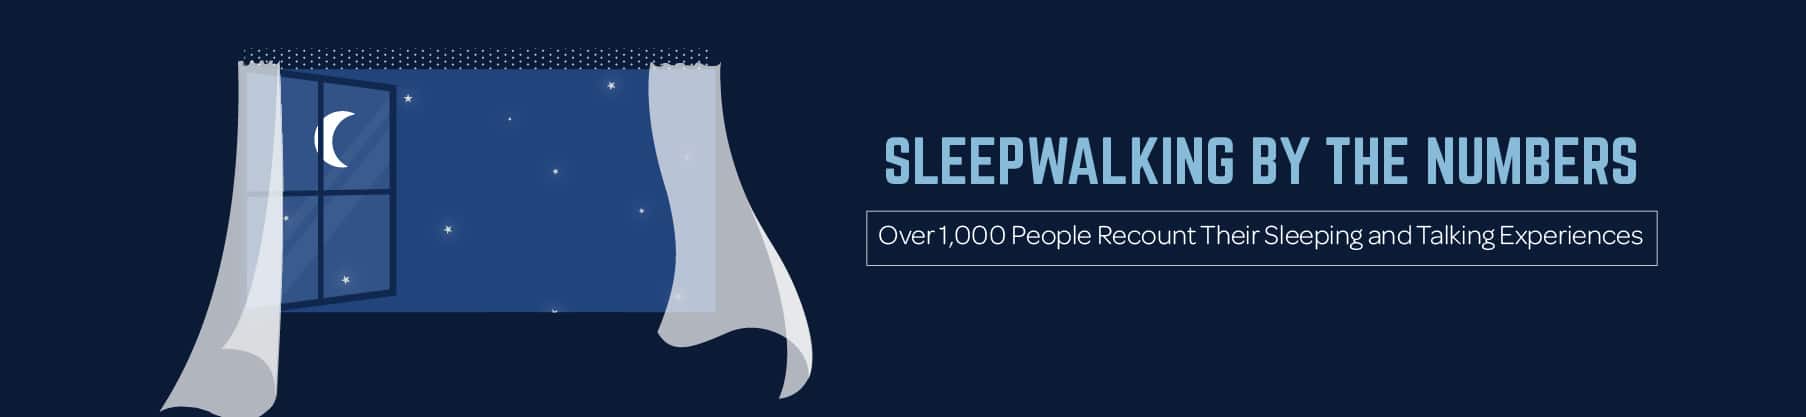 Sleepwalking by the Numbers